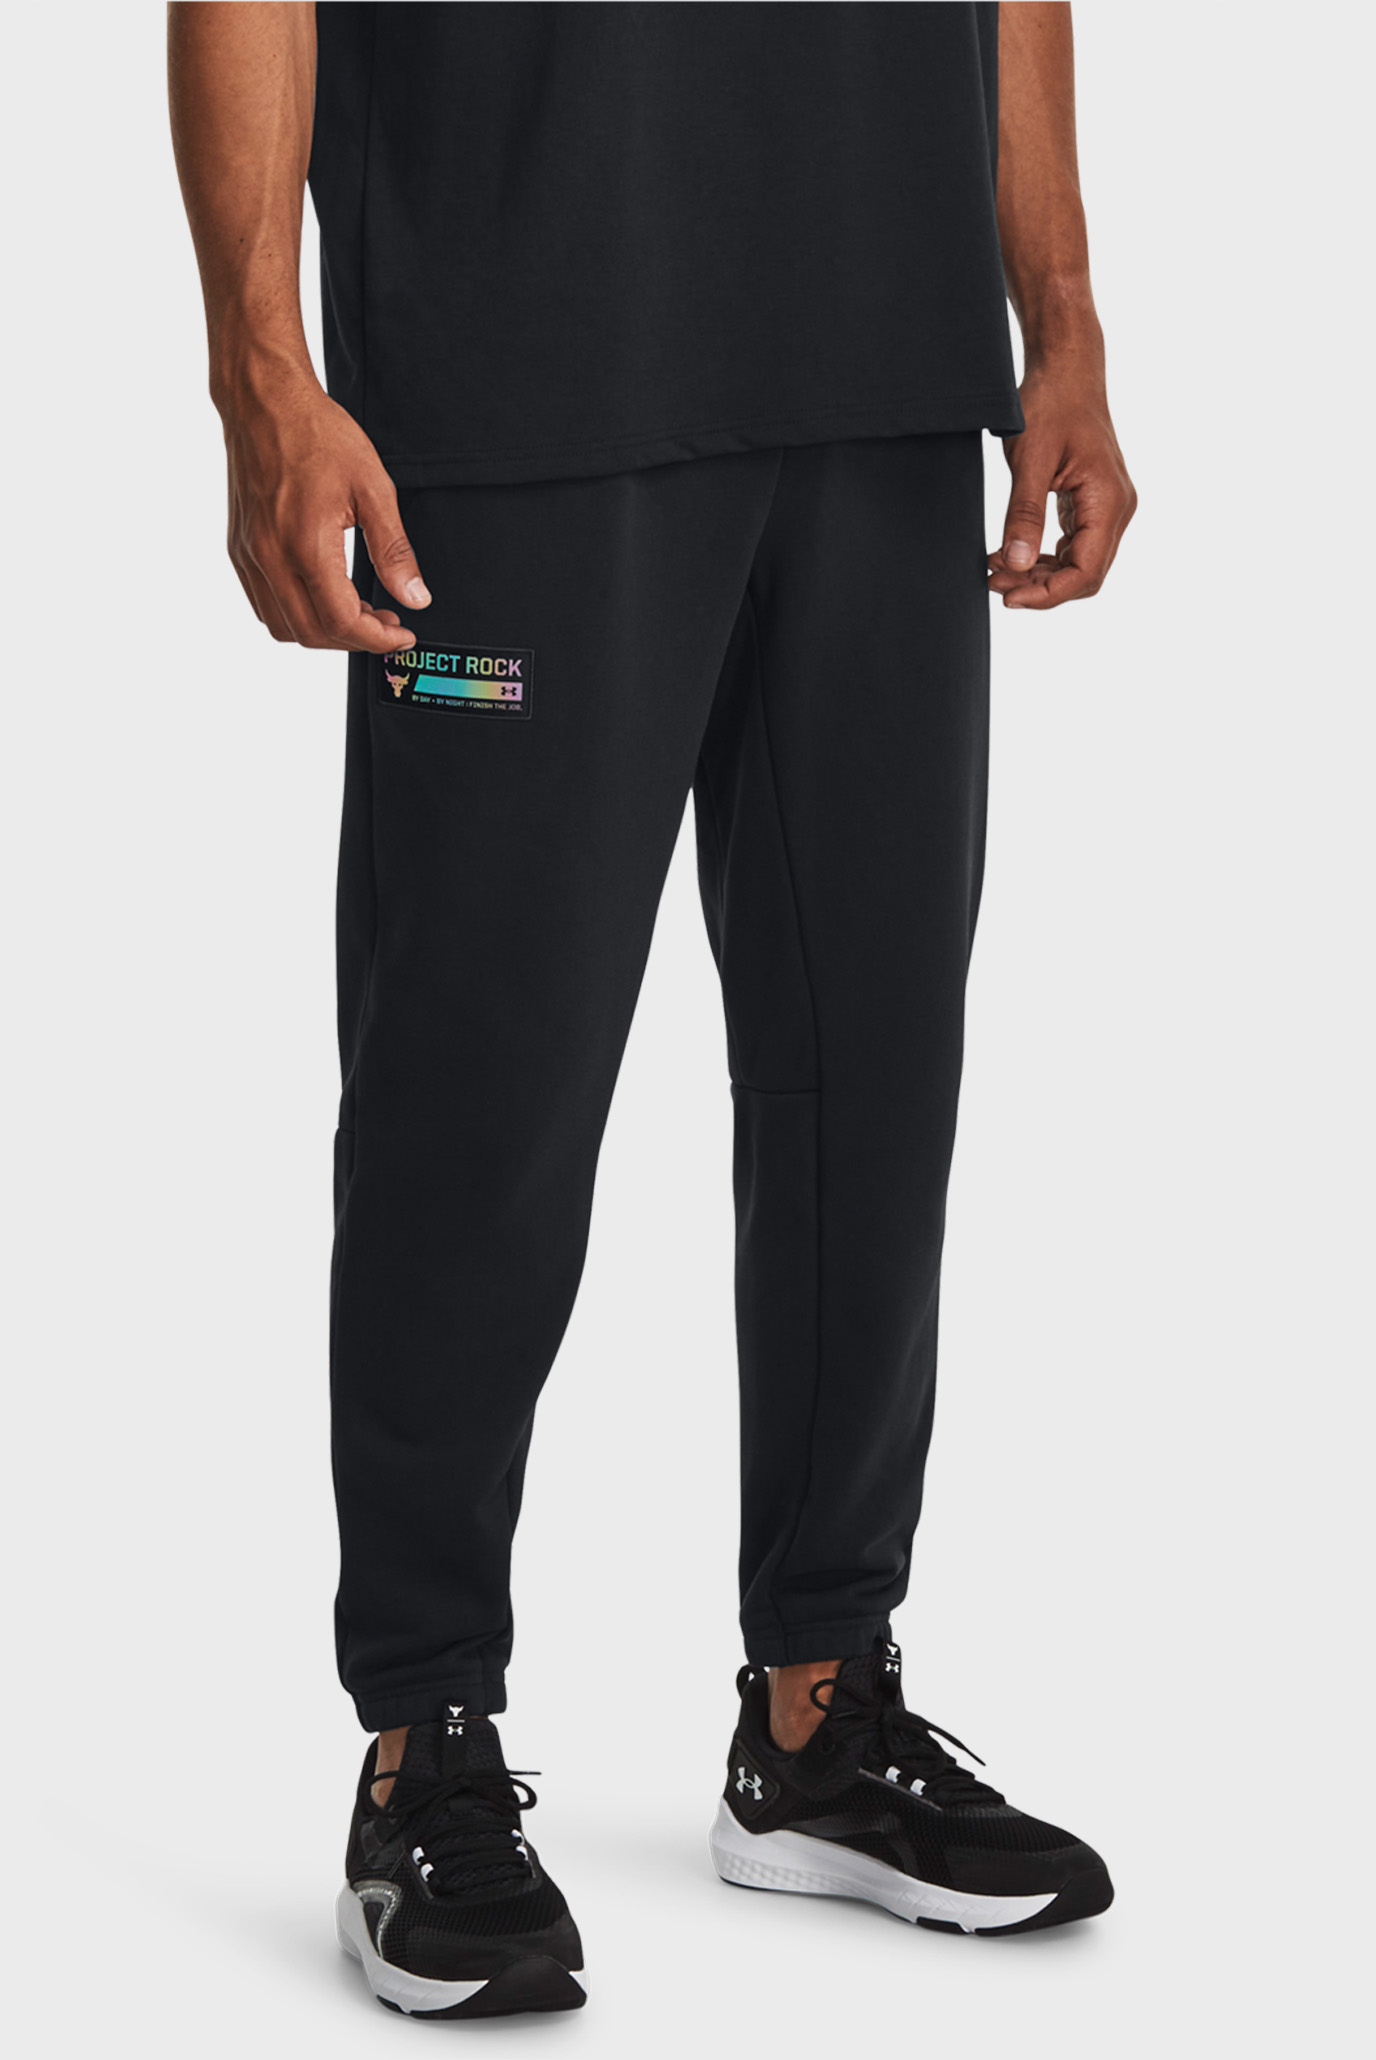 Чоловічі чорні спортивні штани Pjt Rock HW Terry Pnt 1